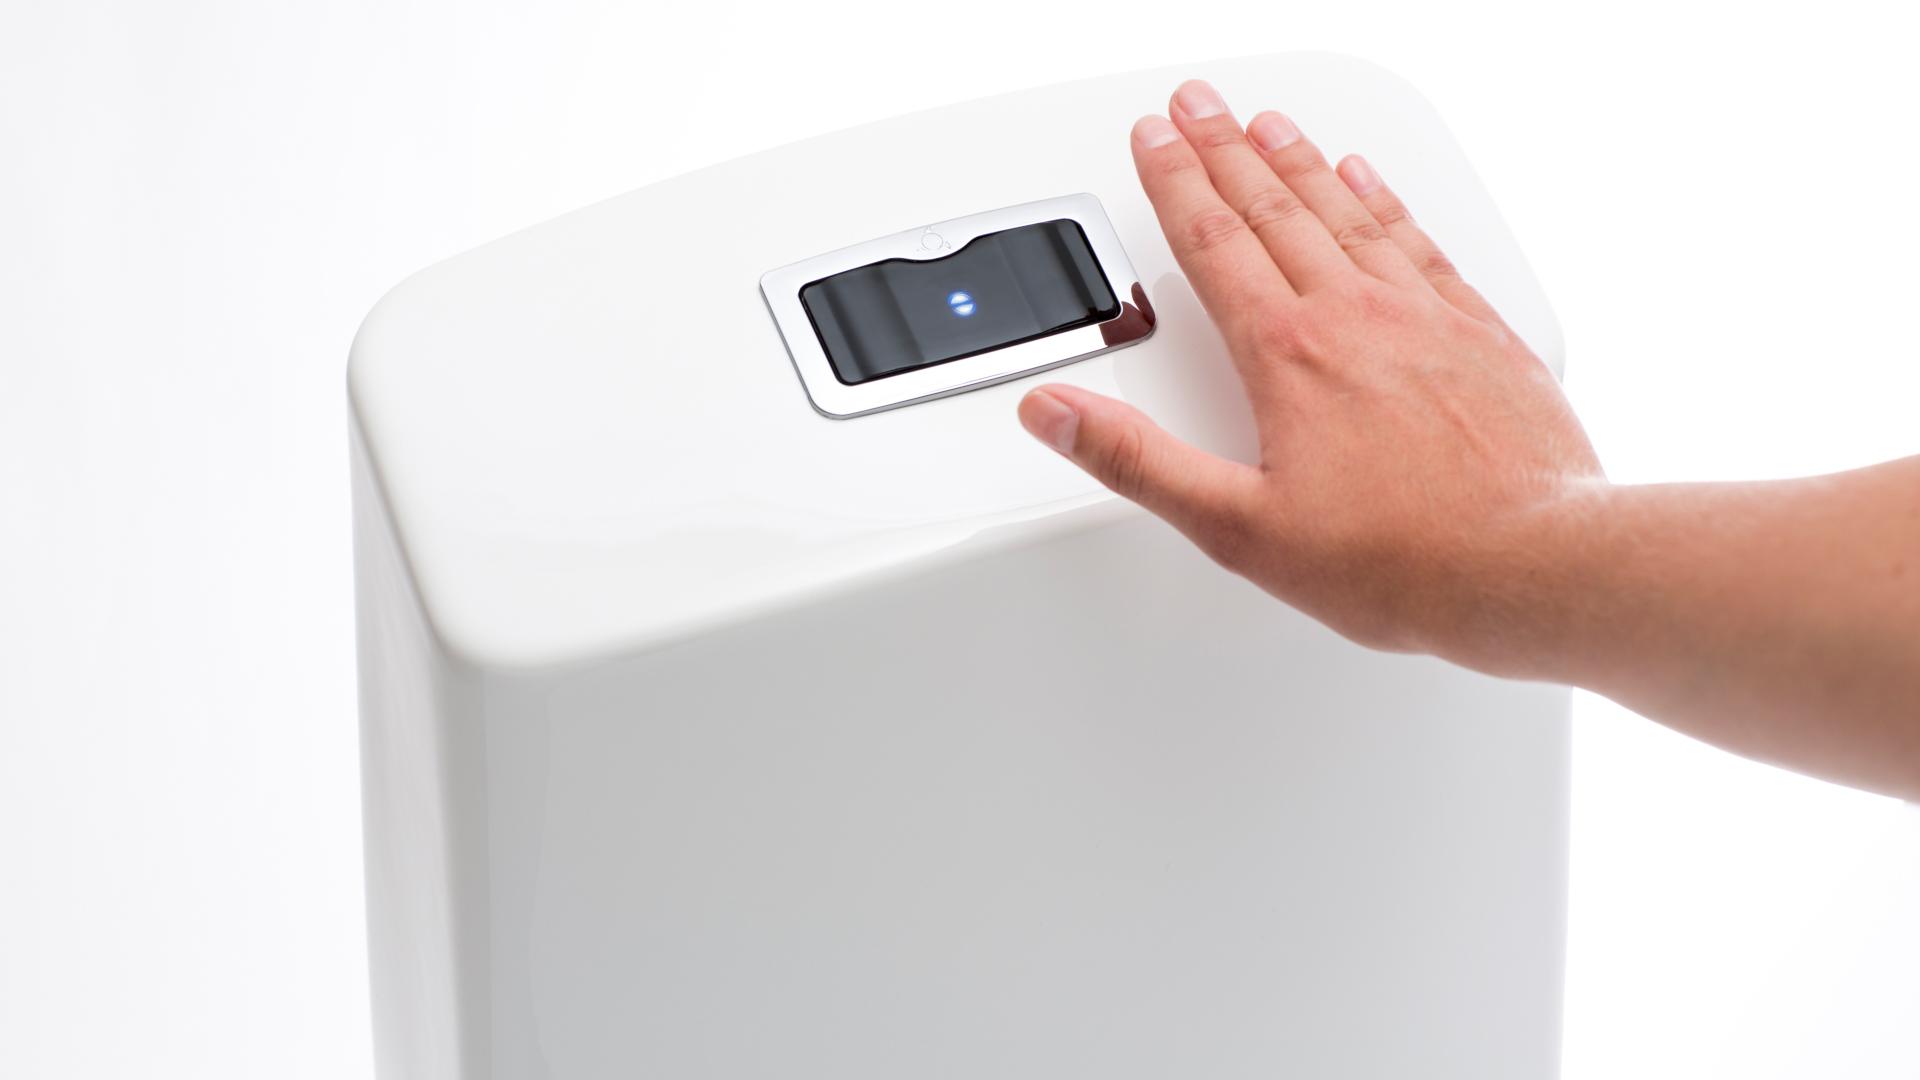 IDO Glow Sensor hoitaa huuhtelun, kun käsi viedään tunnistimen yläpuolelle.